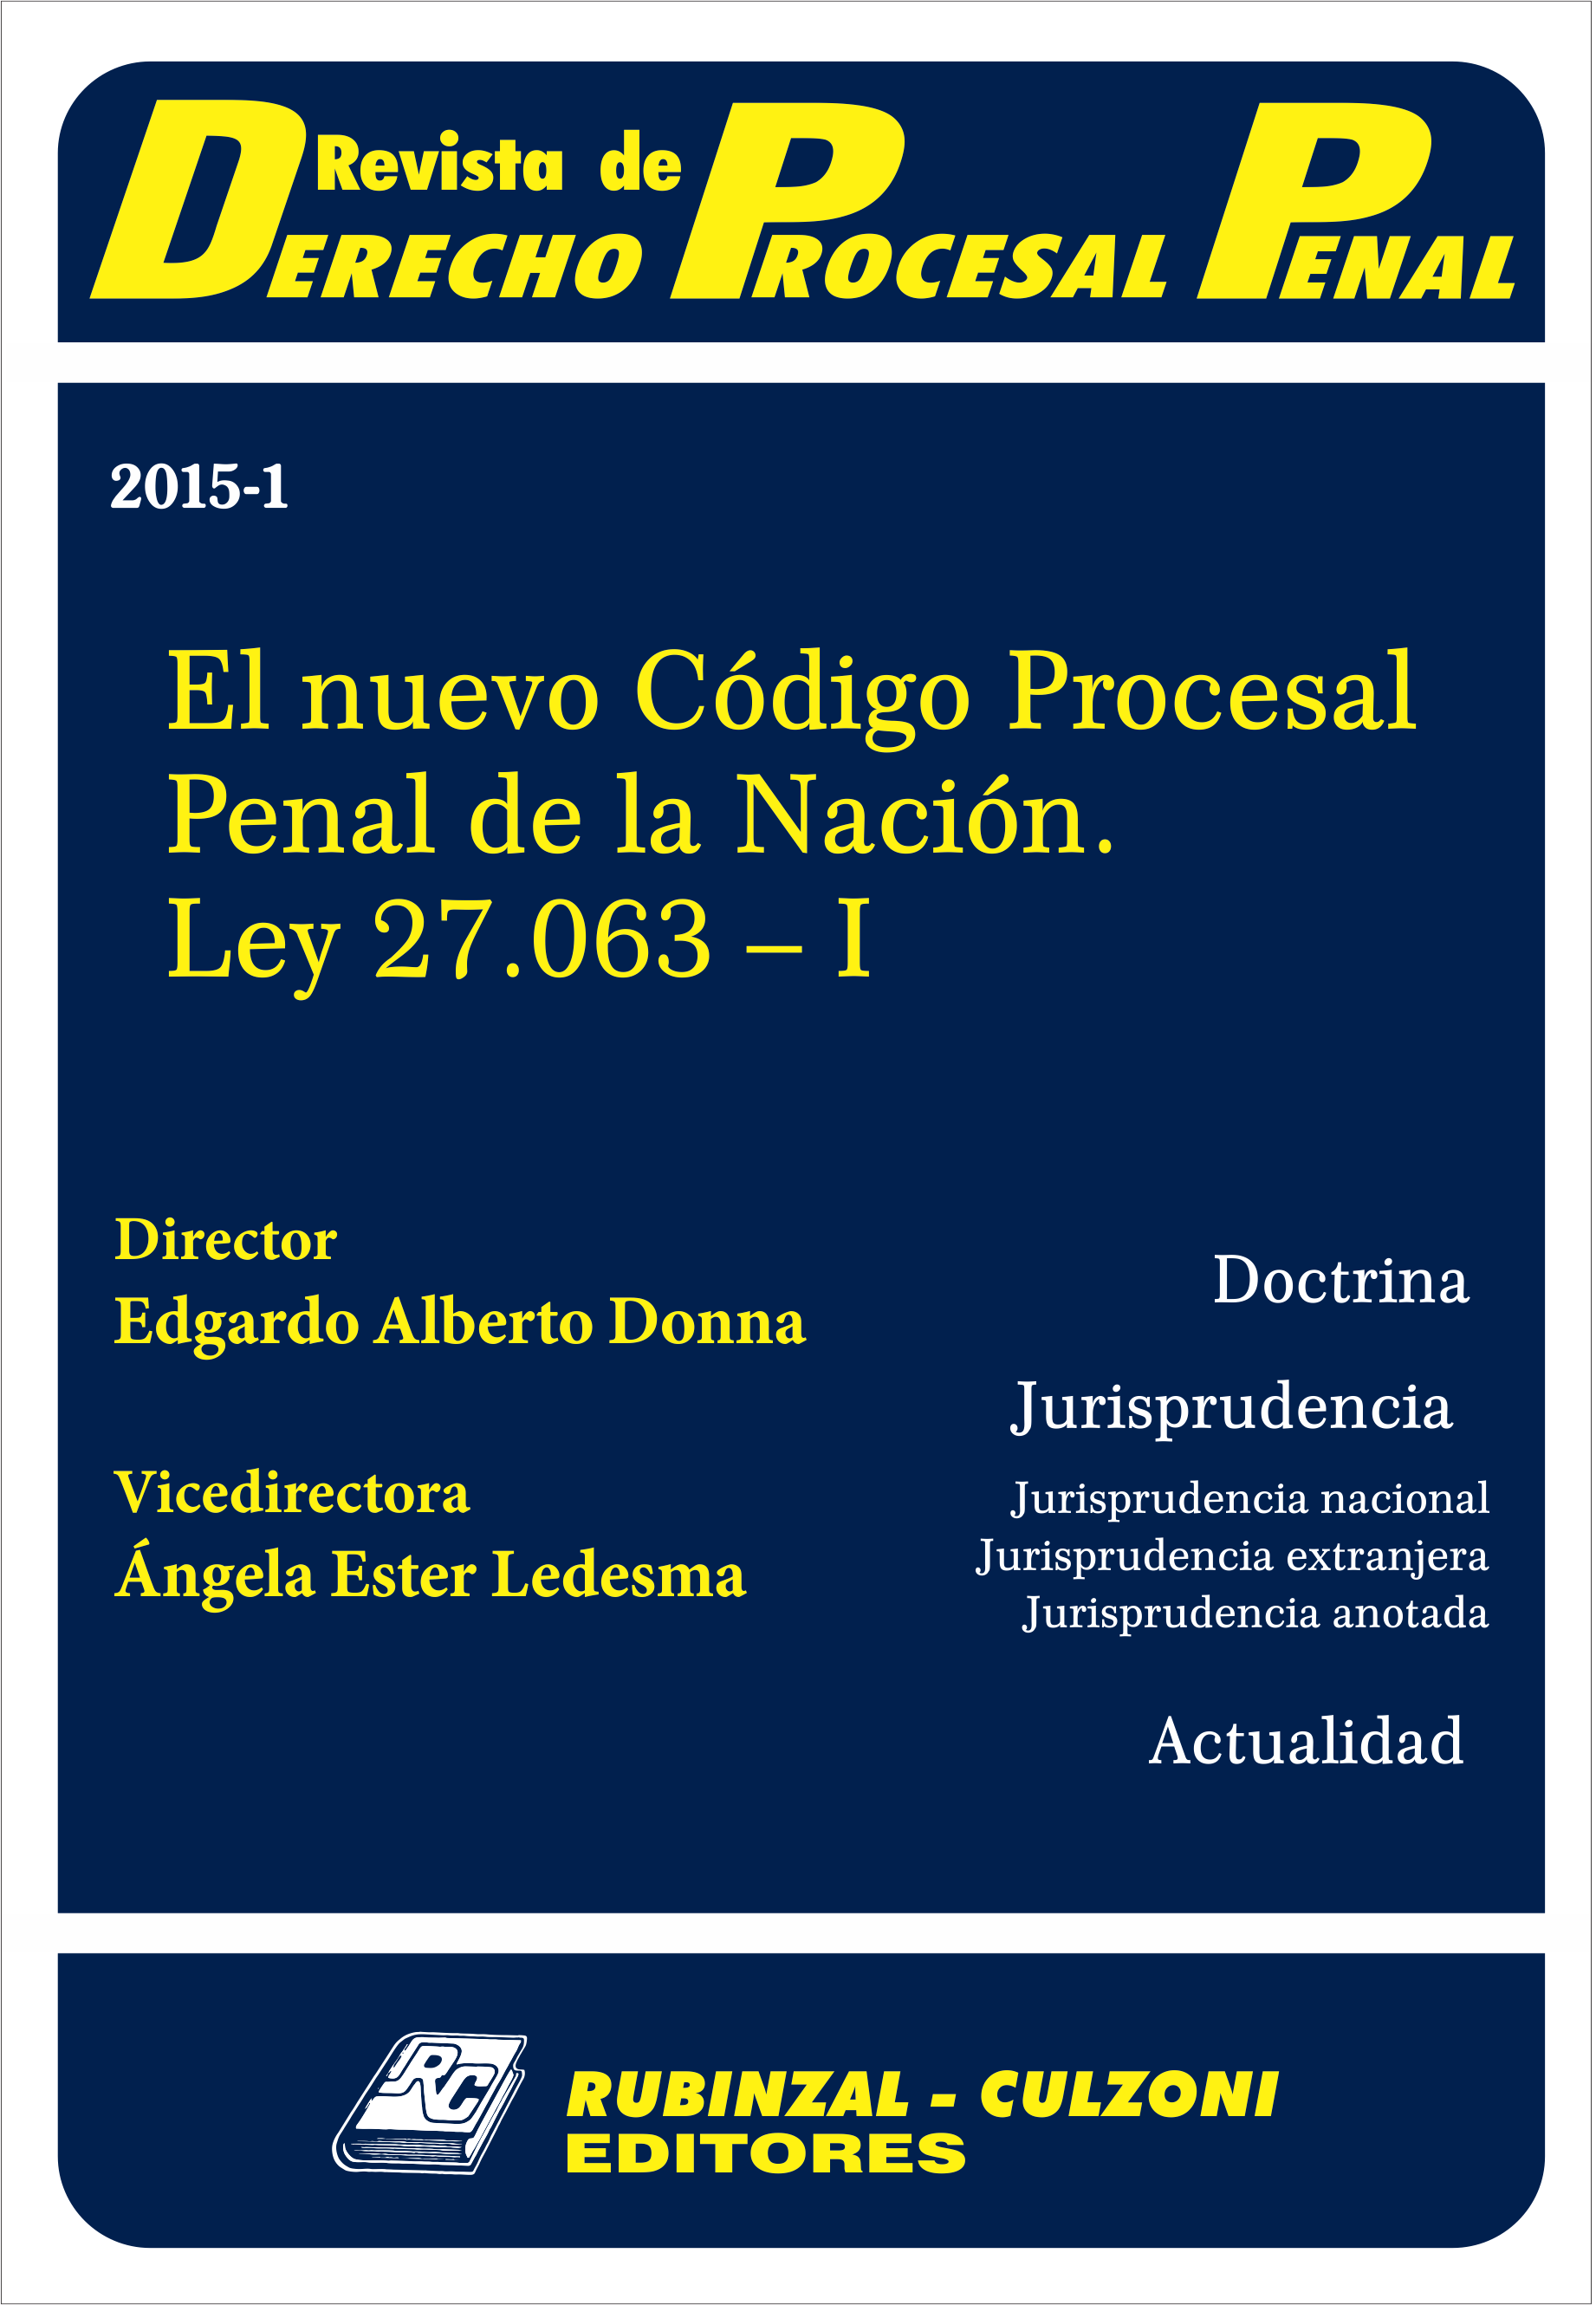  - El nuevo Código Procesal Penal de la Nación. Ley 27.063 - I. [2015-1]